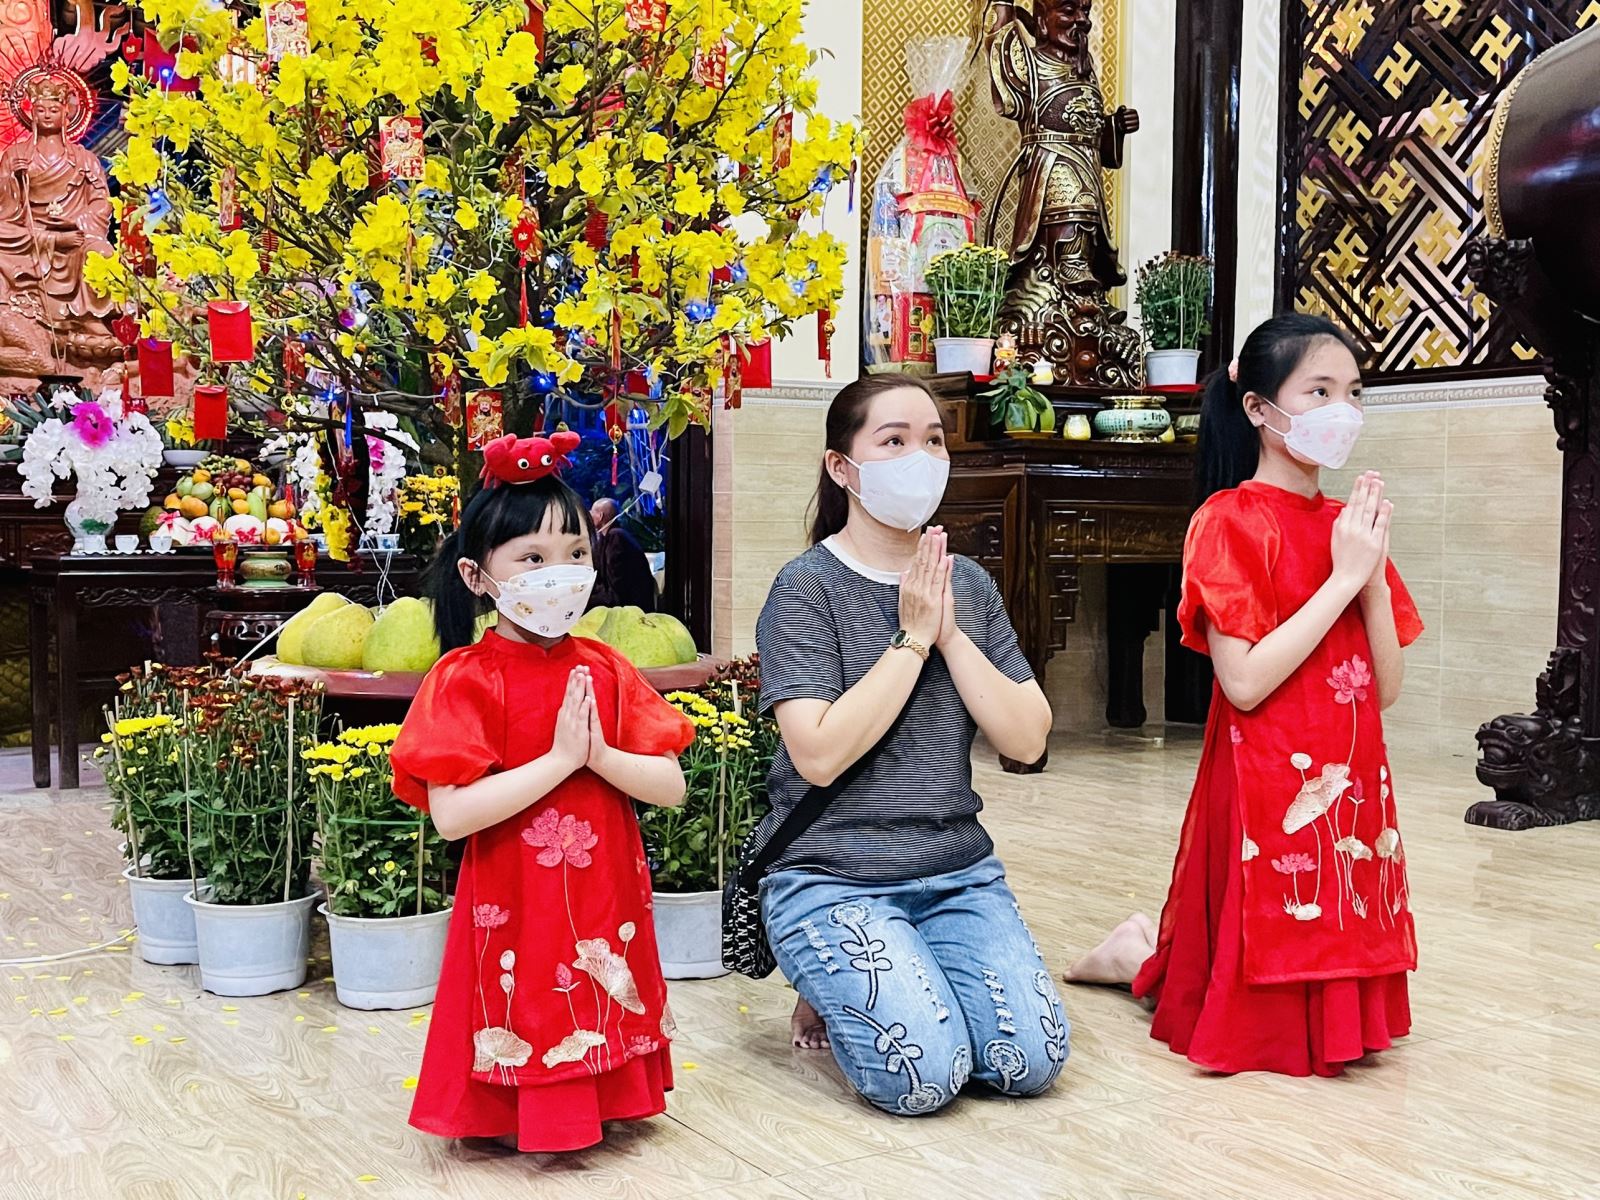 Tận hưởng không khí tín ngưỡng và lễ hội tại TP Hồ Chí Minh bằng cách xem những hình ảnh đầy màu sắc của Lễ chùa Tết. Cảm nhận sự hoành tráng, tôn nghiêm và ý nghĩa của ngày lễ thiêng liêng này.